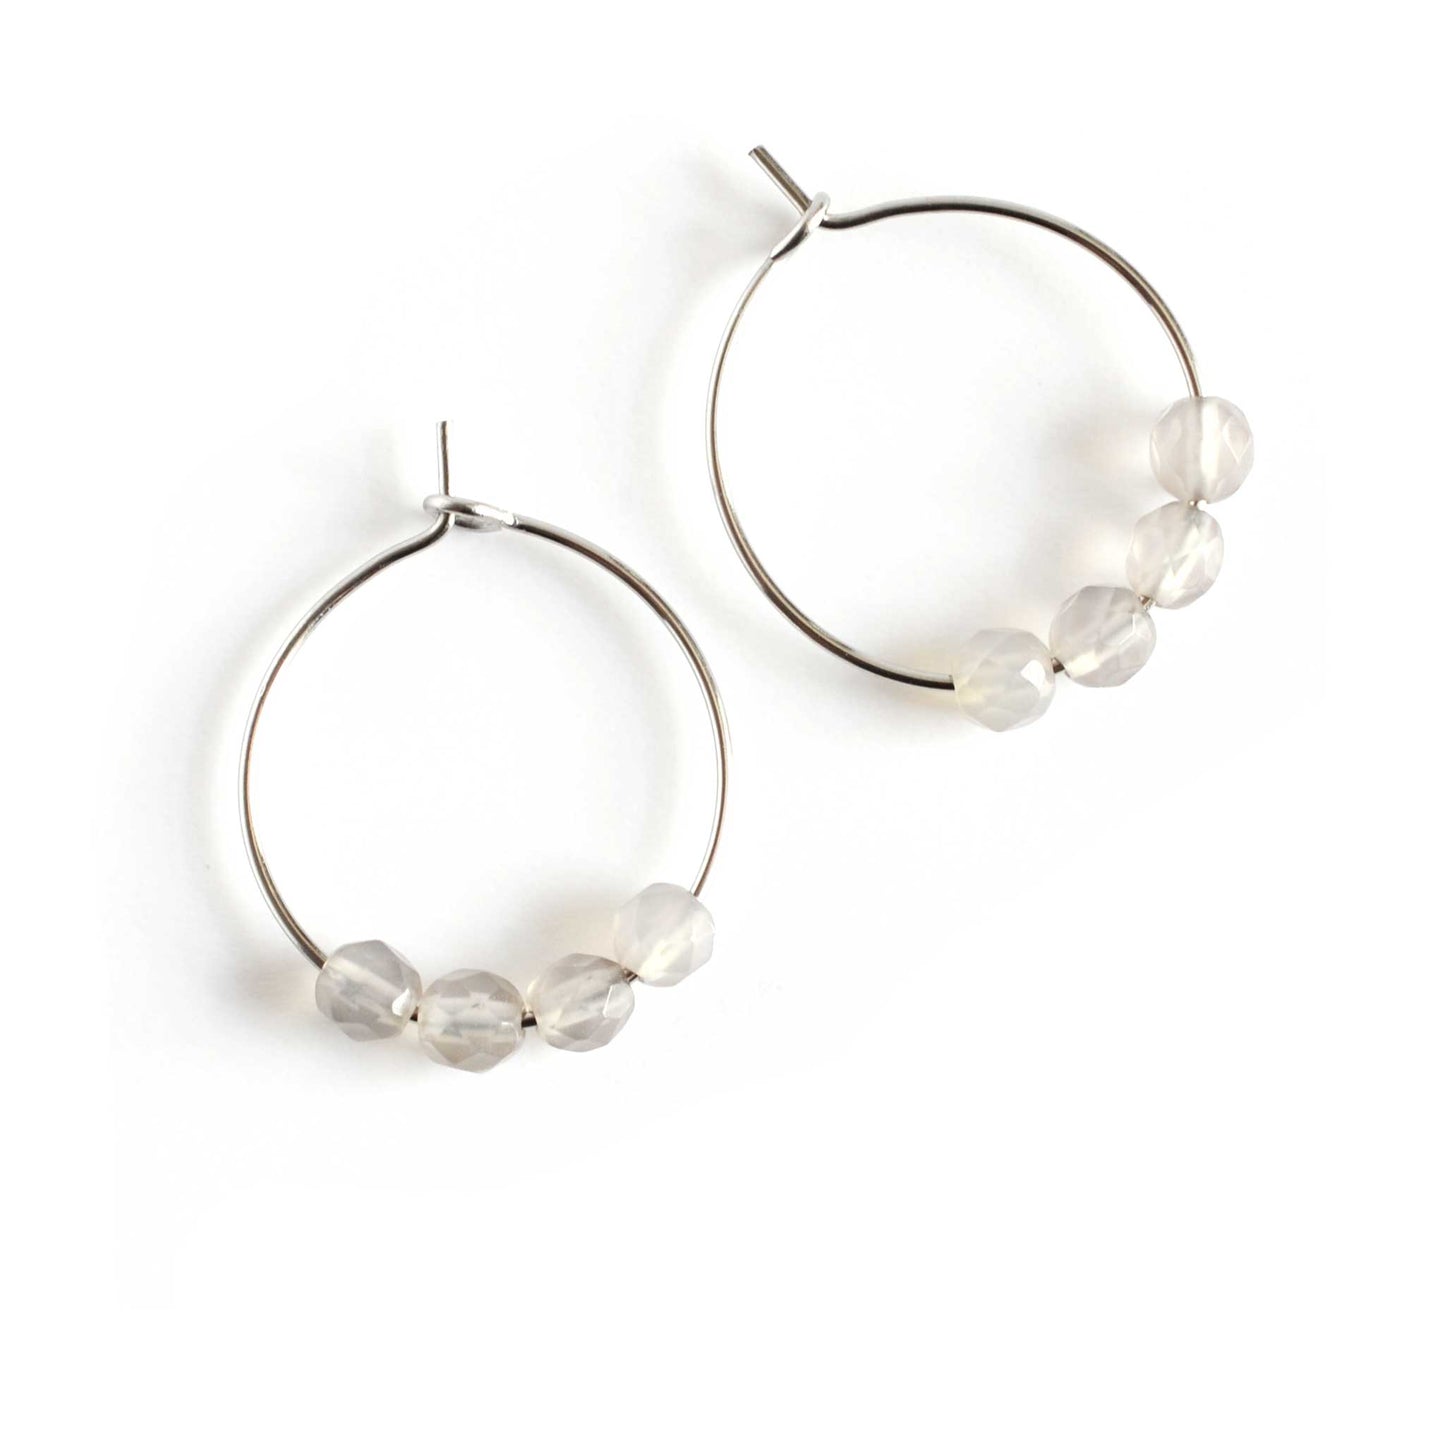 Pair of grey Agate gemstone hoop earrings on white background